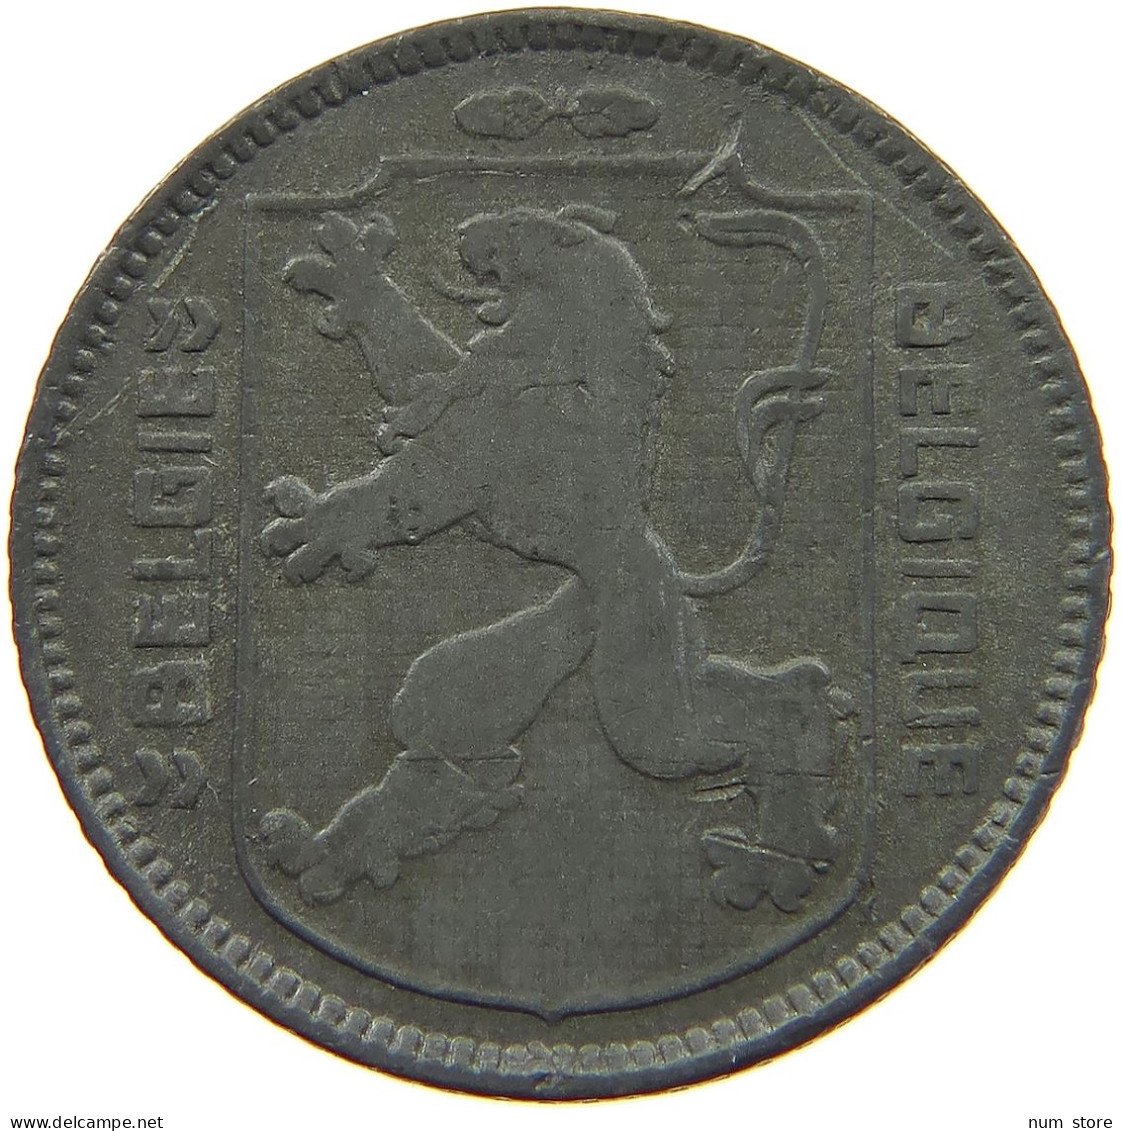 BELGIUM 1 FRANC 1945 #a005 0873 - 1 Franc